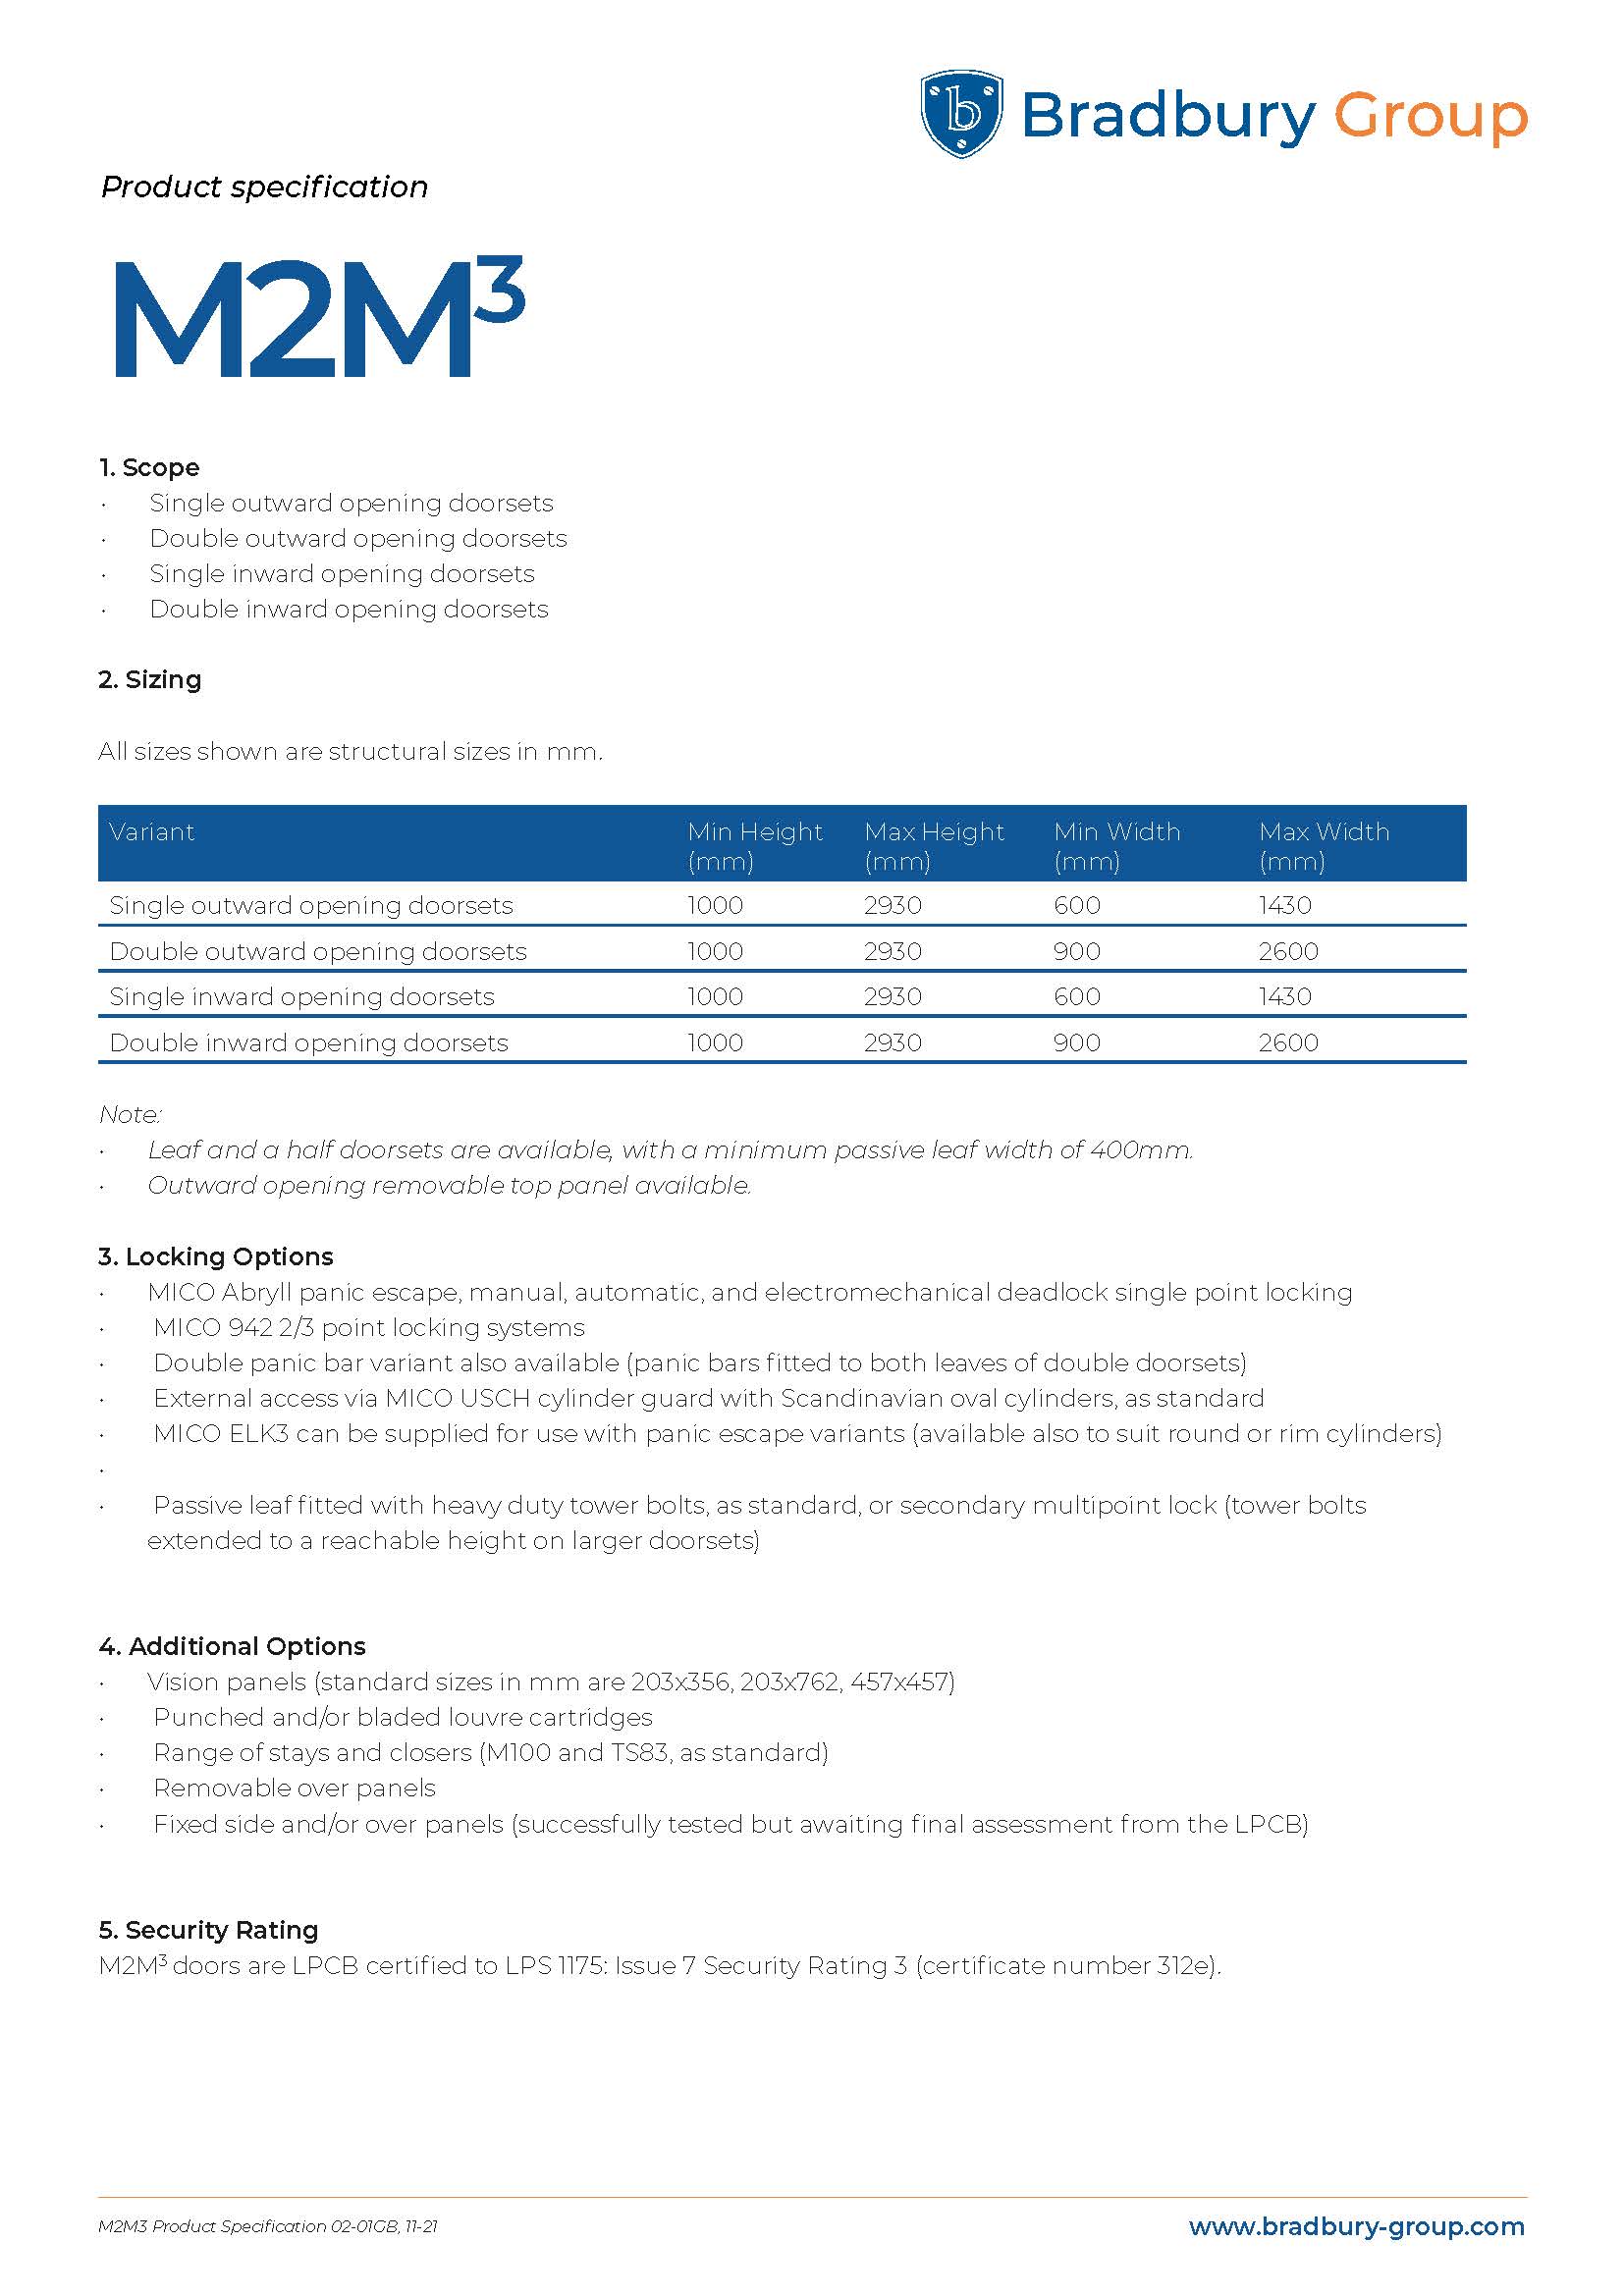 M2M3 Steel Door product specification